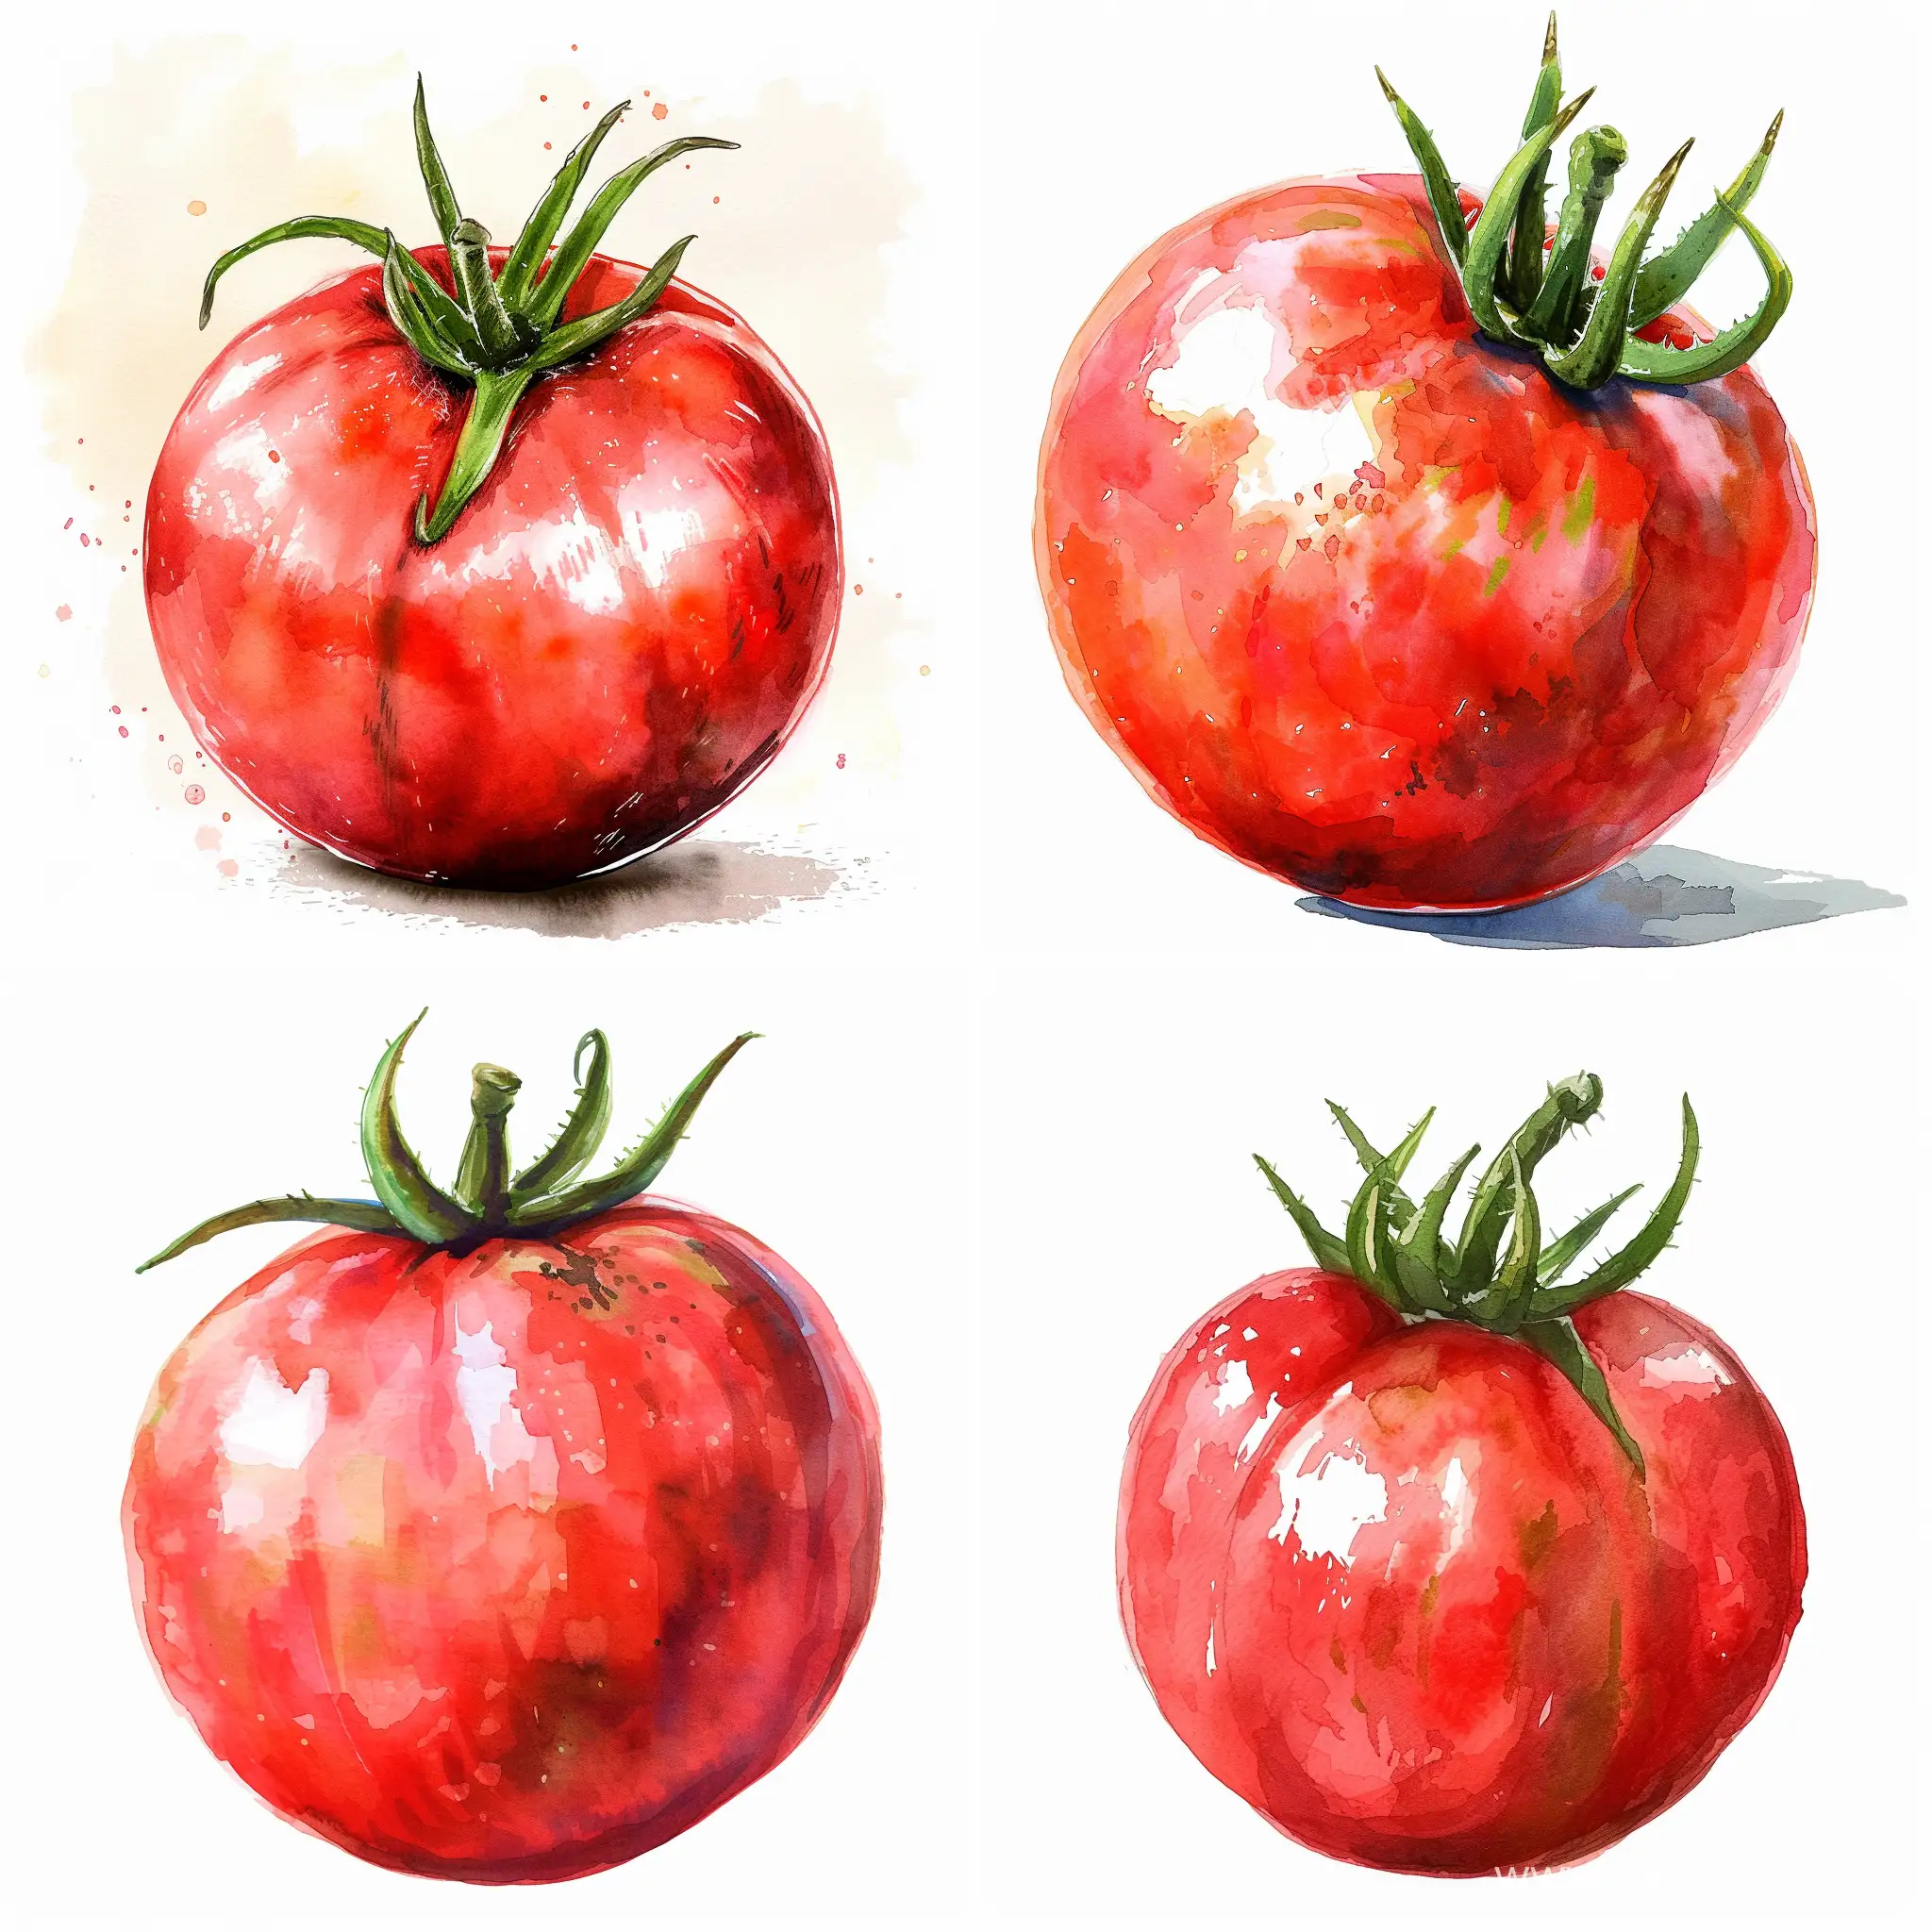 Vibrant-Watercolor-Illustration-of-a-Ripe-Red-Tomato